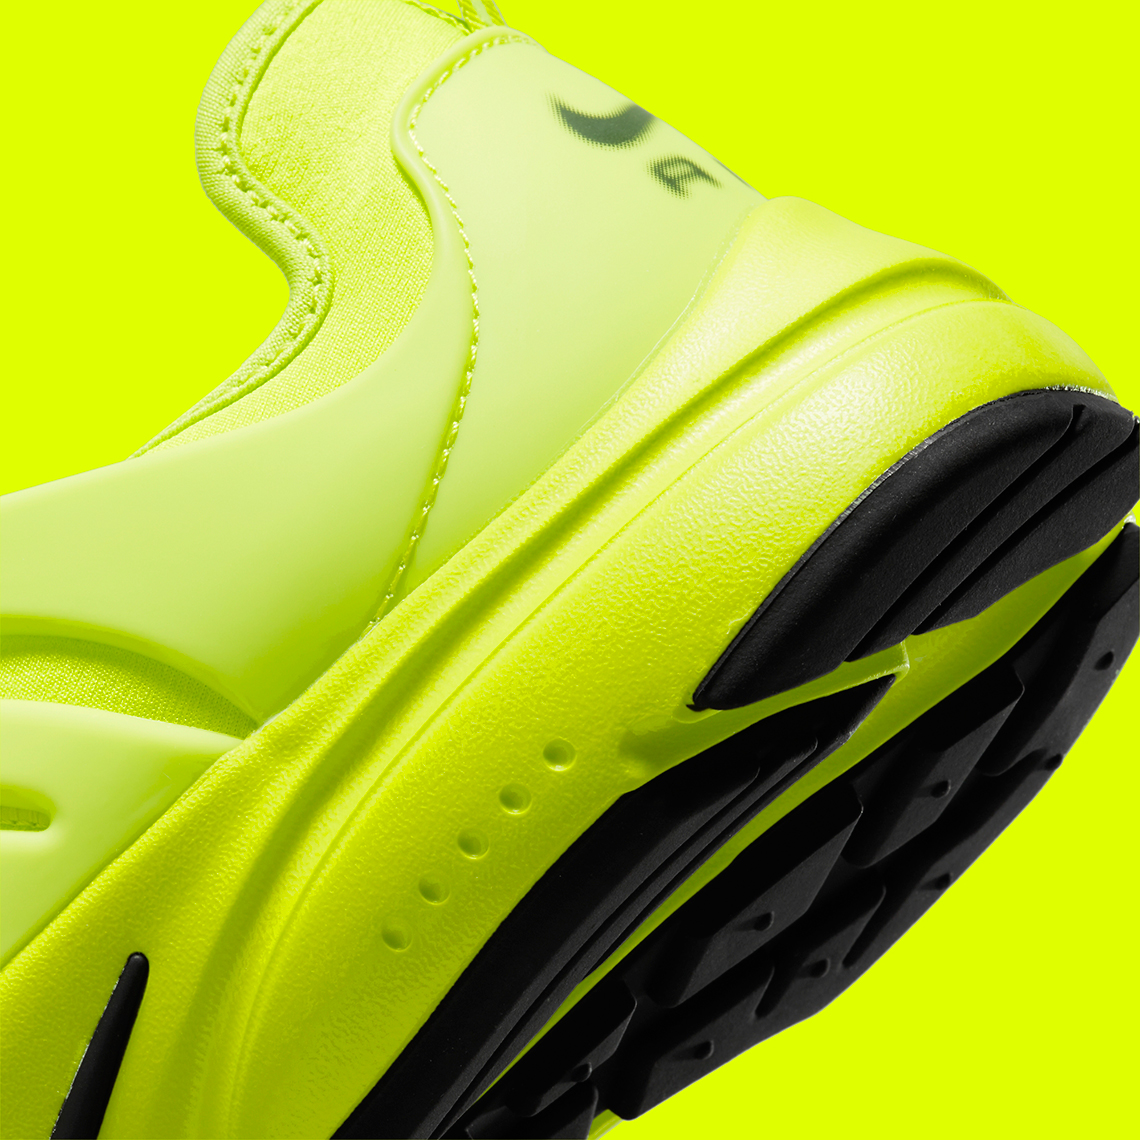 Nike Air Presto Tennis Ball Dv2228 300 Release Date 5